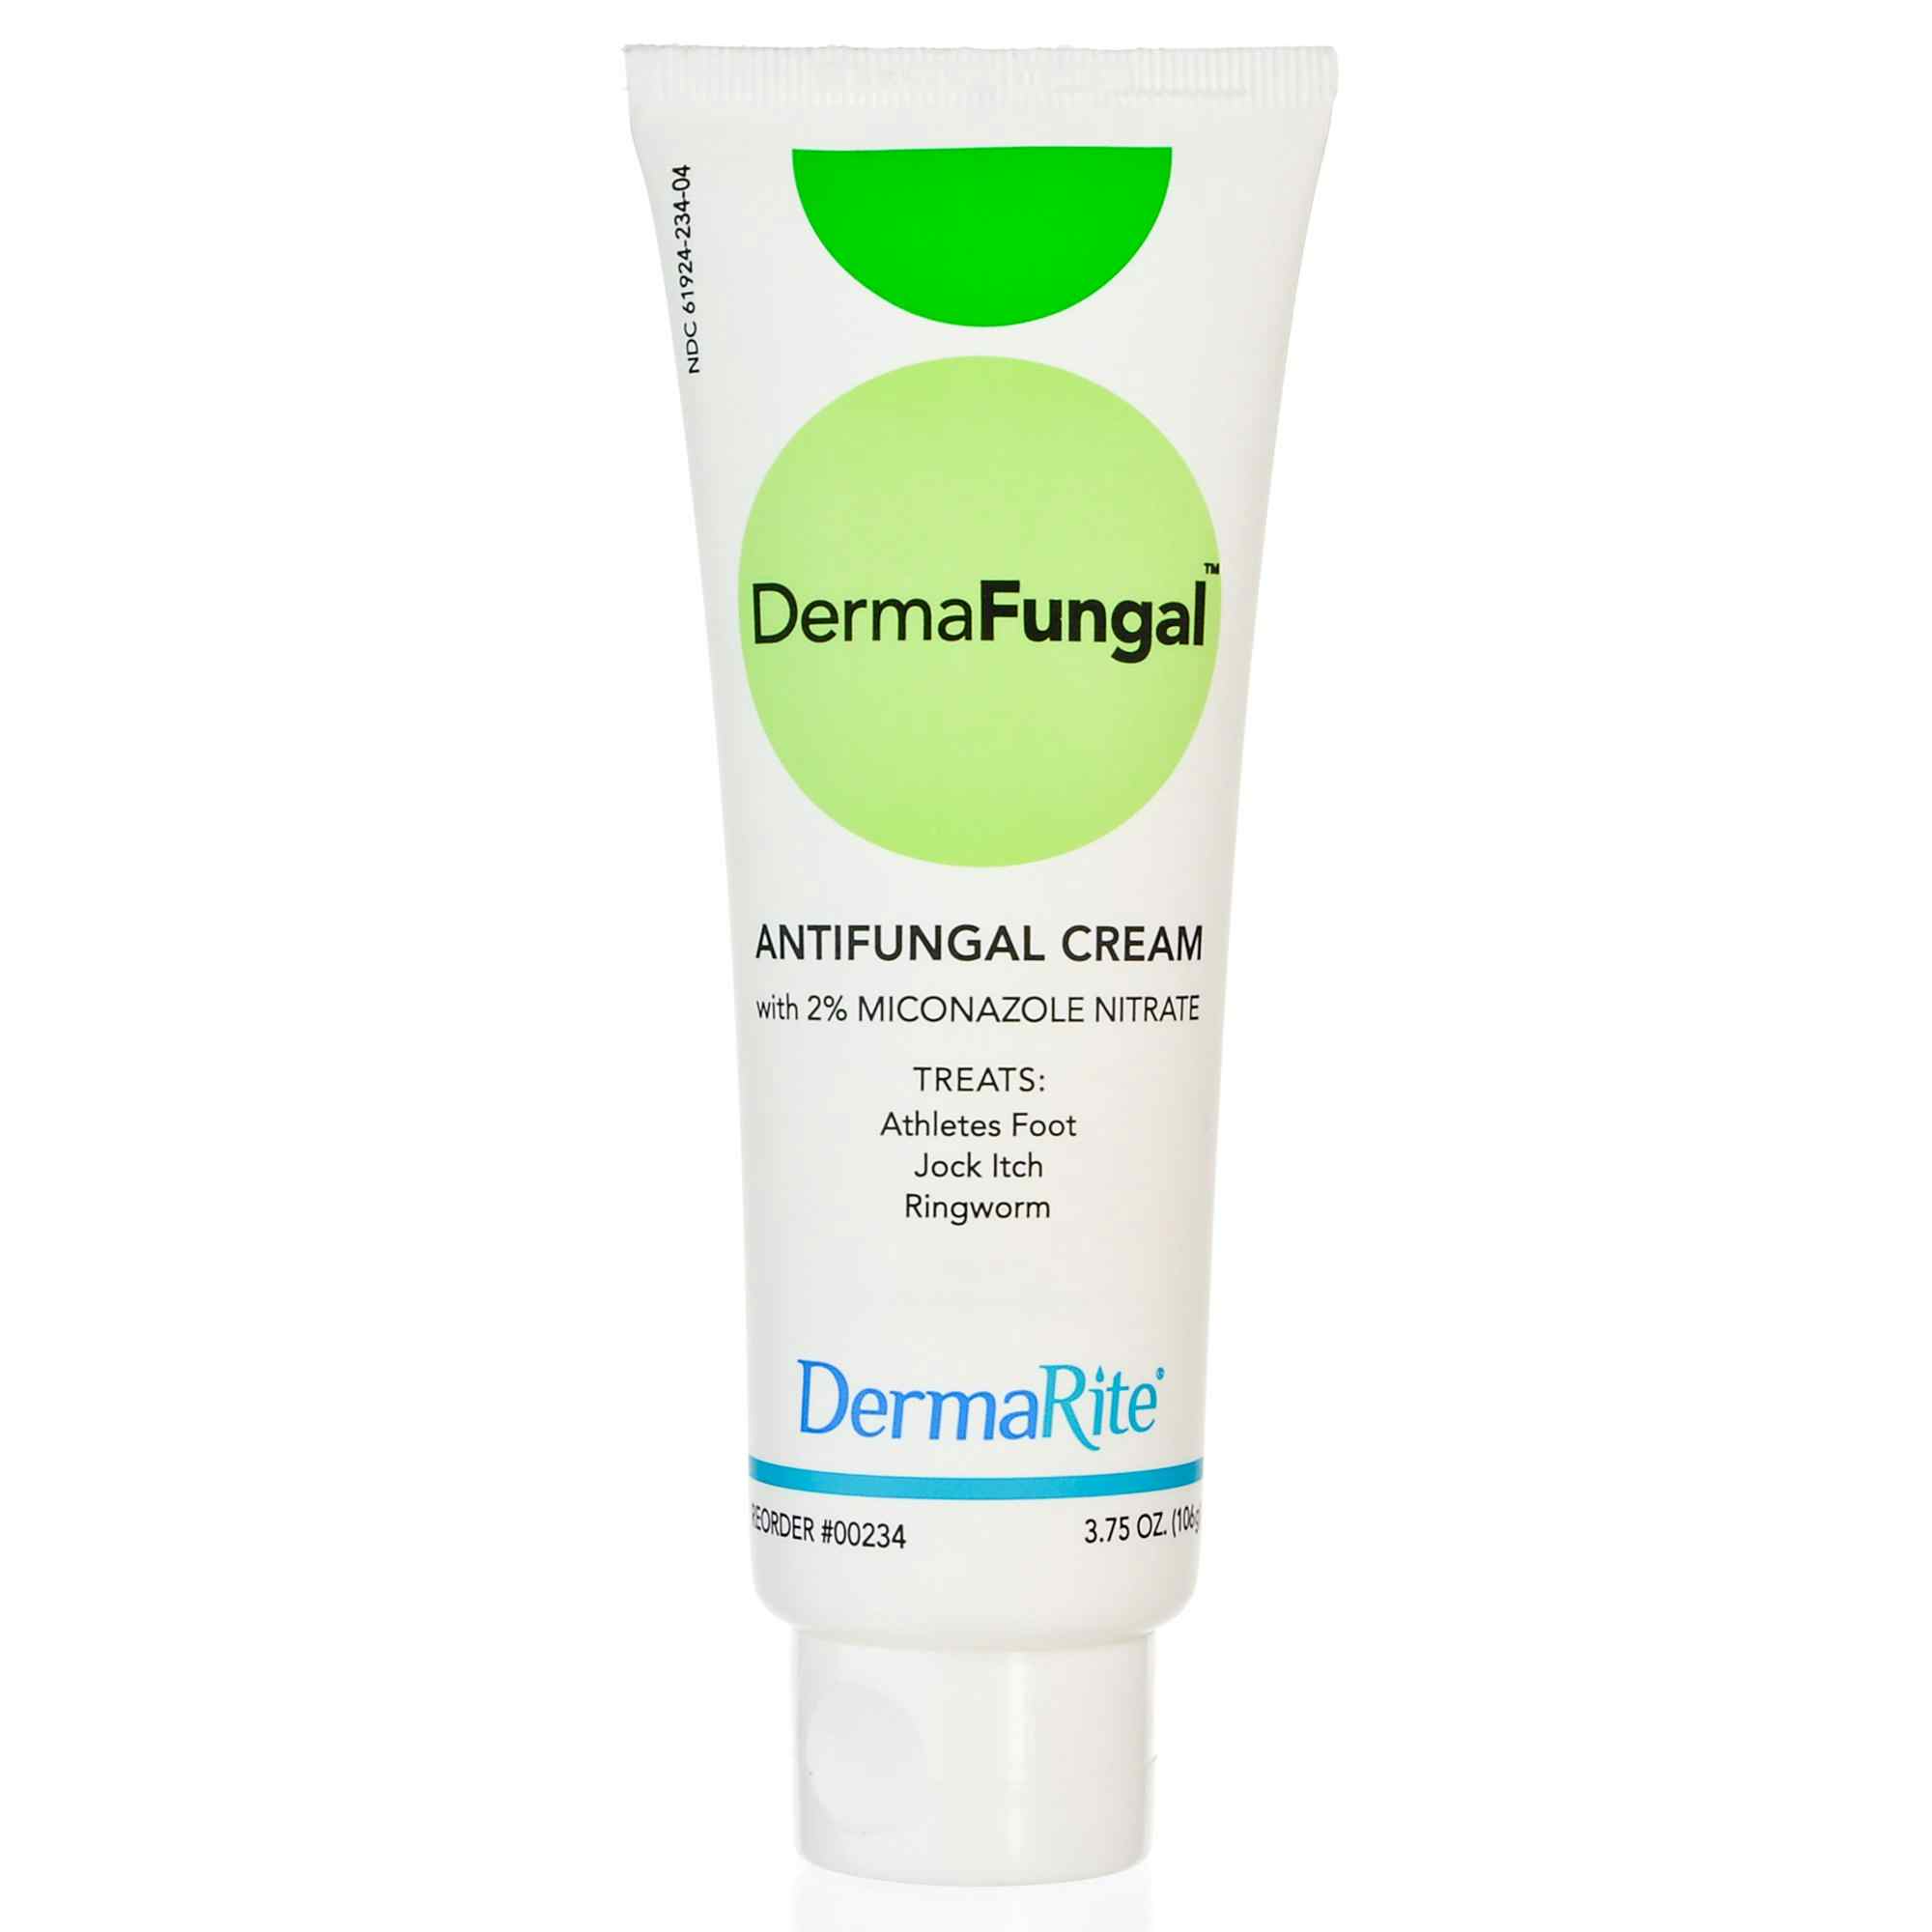 DermaRite DermaFungal Antifungal Cream, 00234, Case of 24